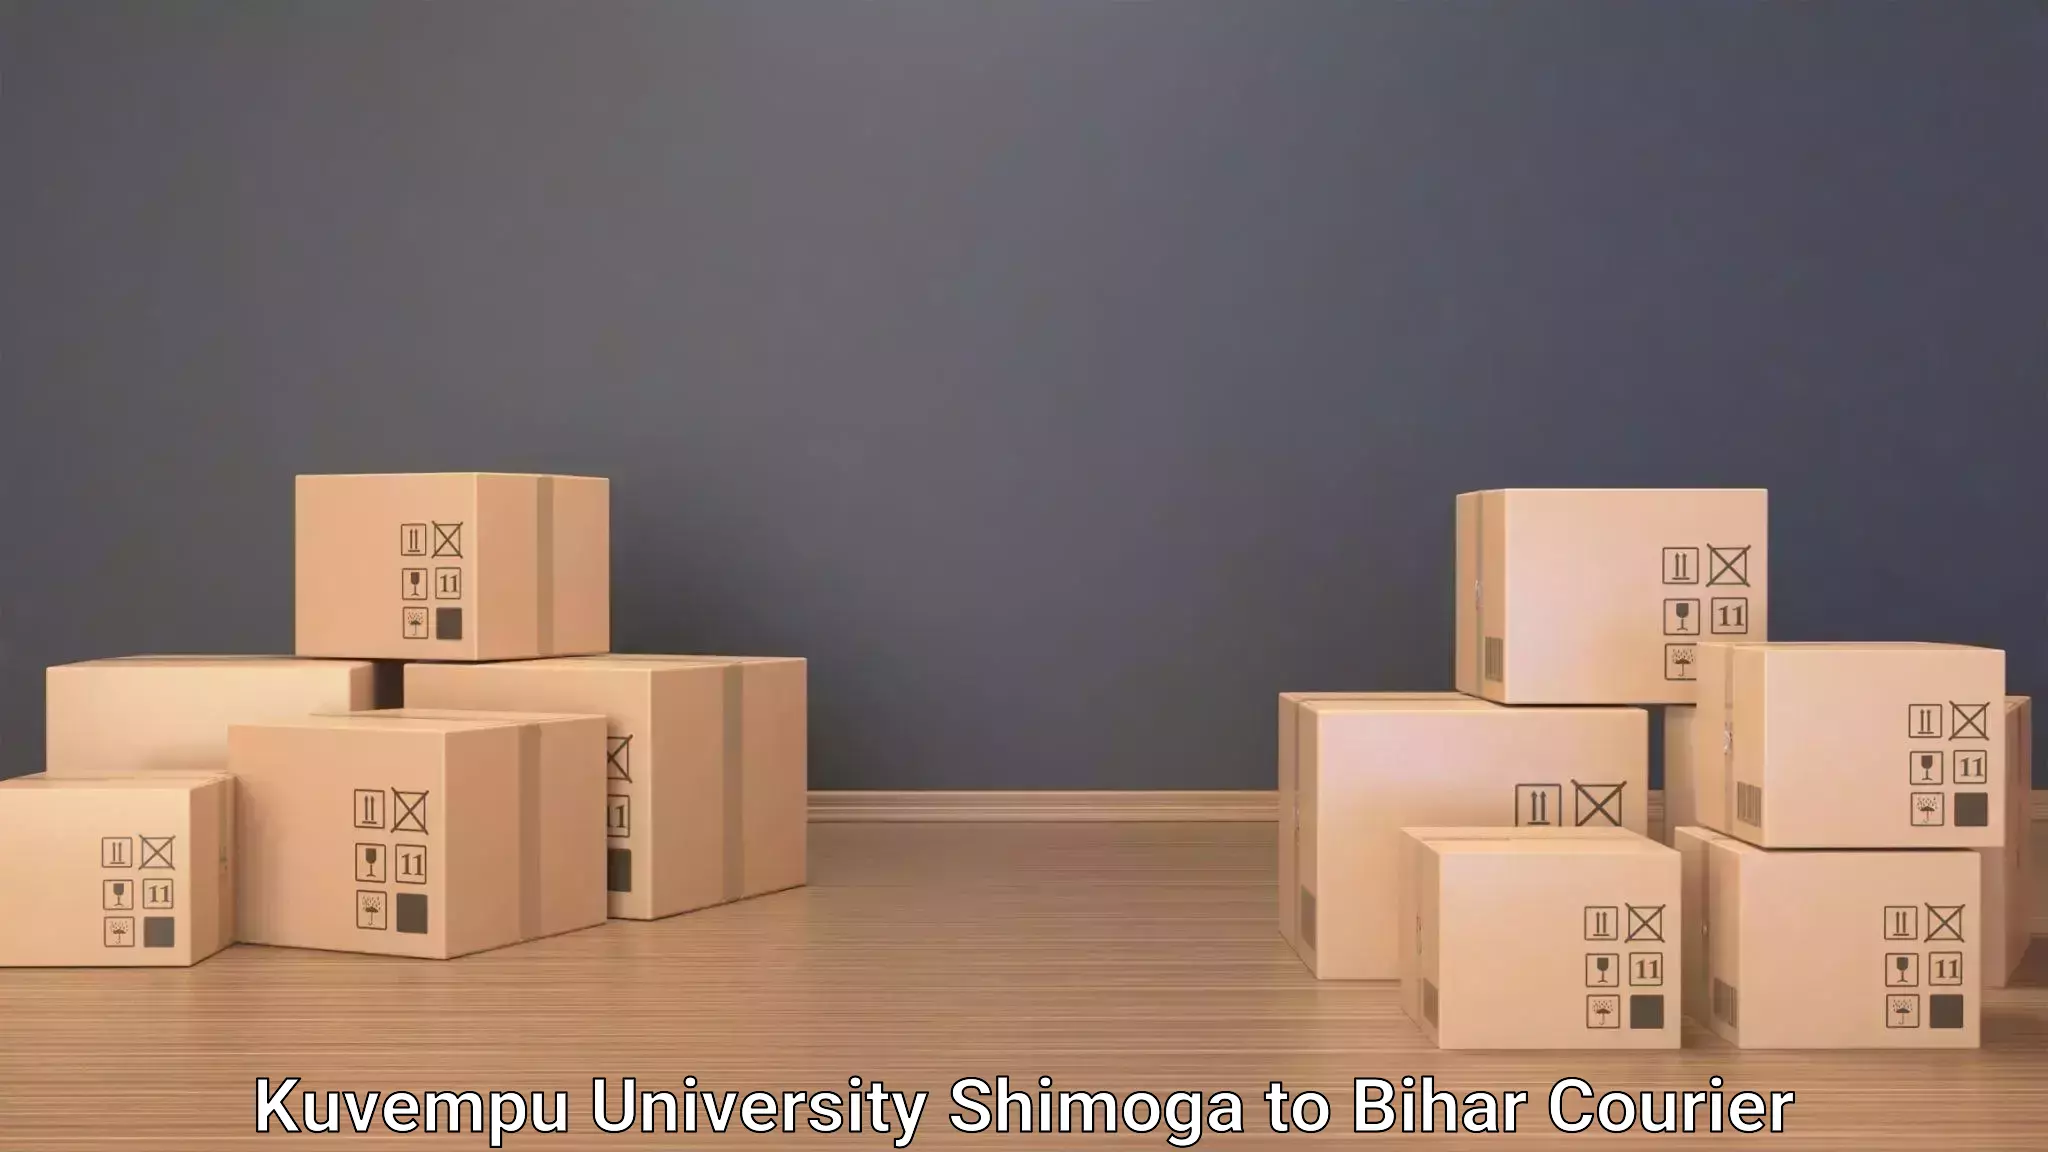 Luggage delivery estimate Kuvempu University Shimoga to Bharwara